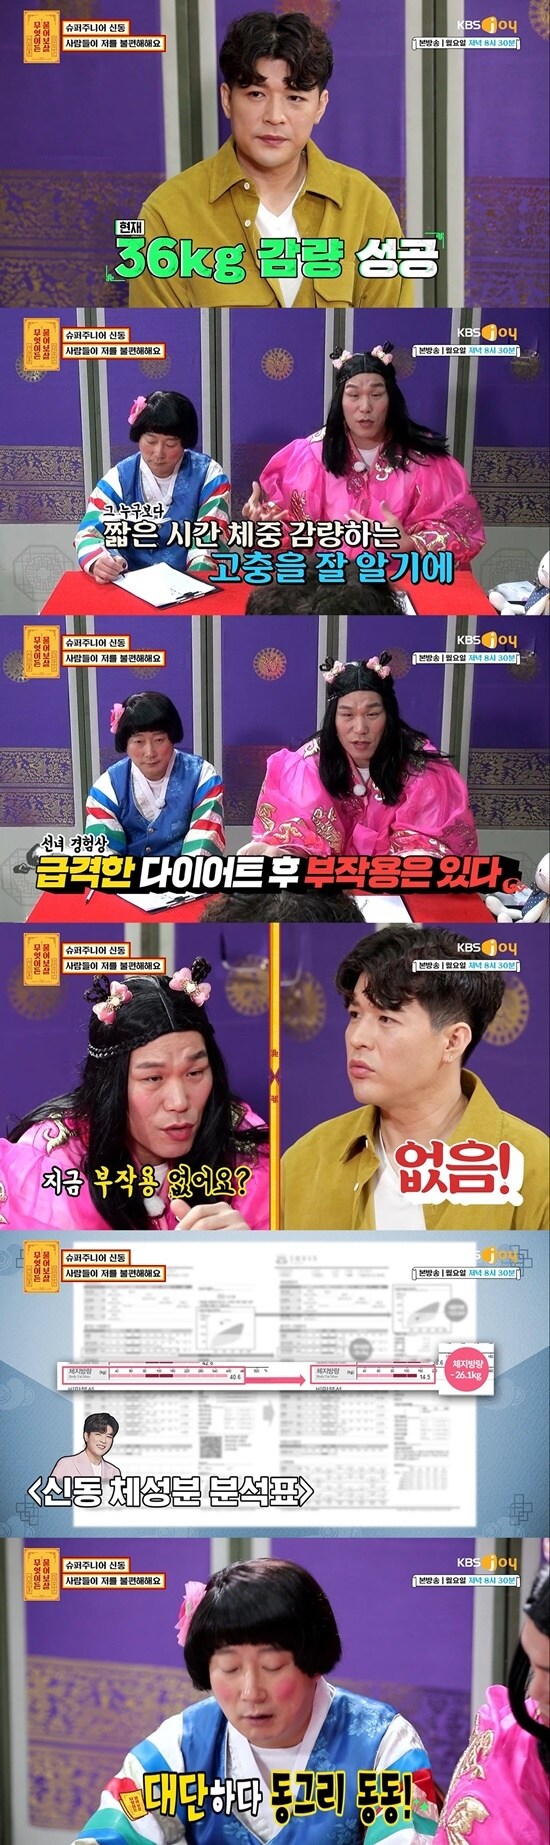 KBS Joy '무엇이든 물어보살' 방송 화면 캡처 © 뉴스1